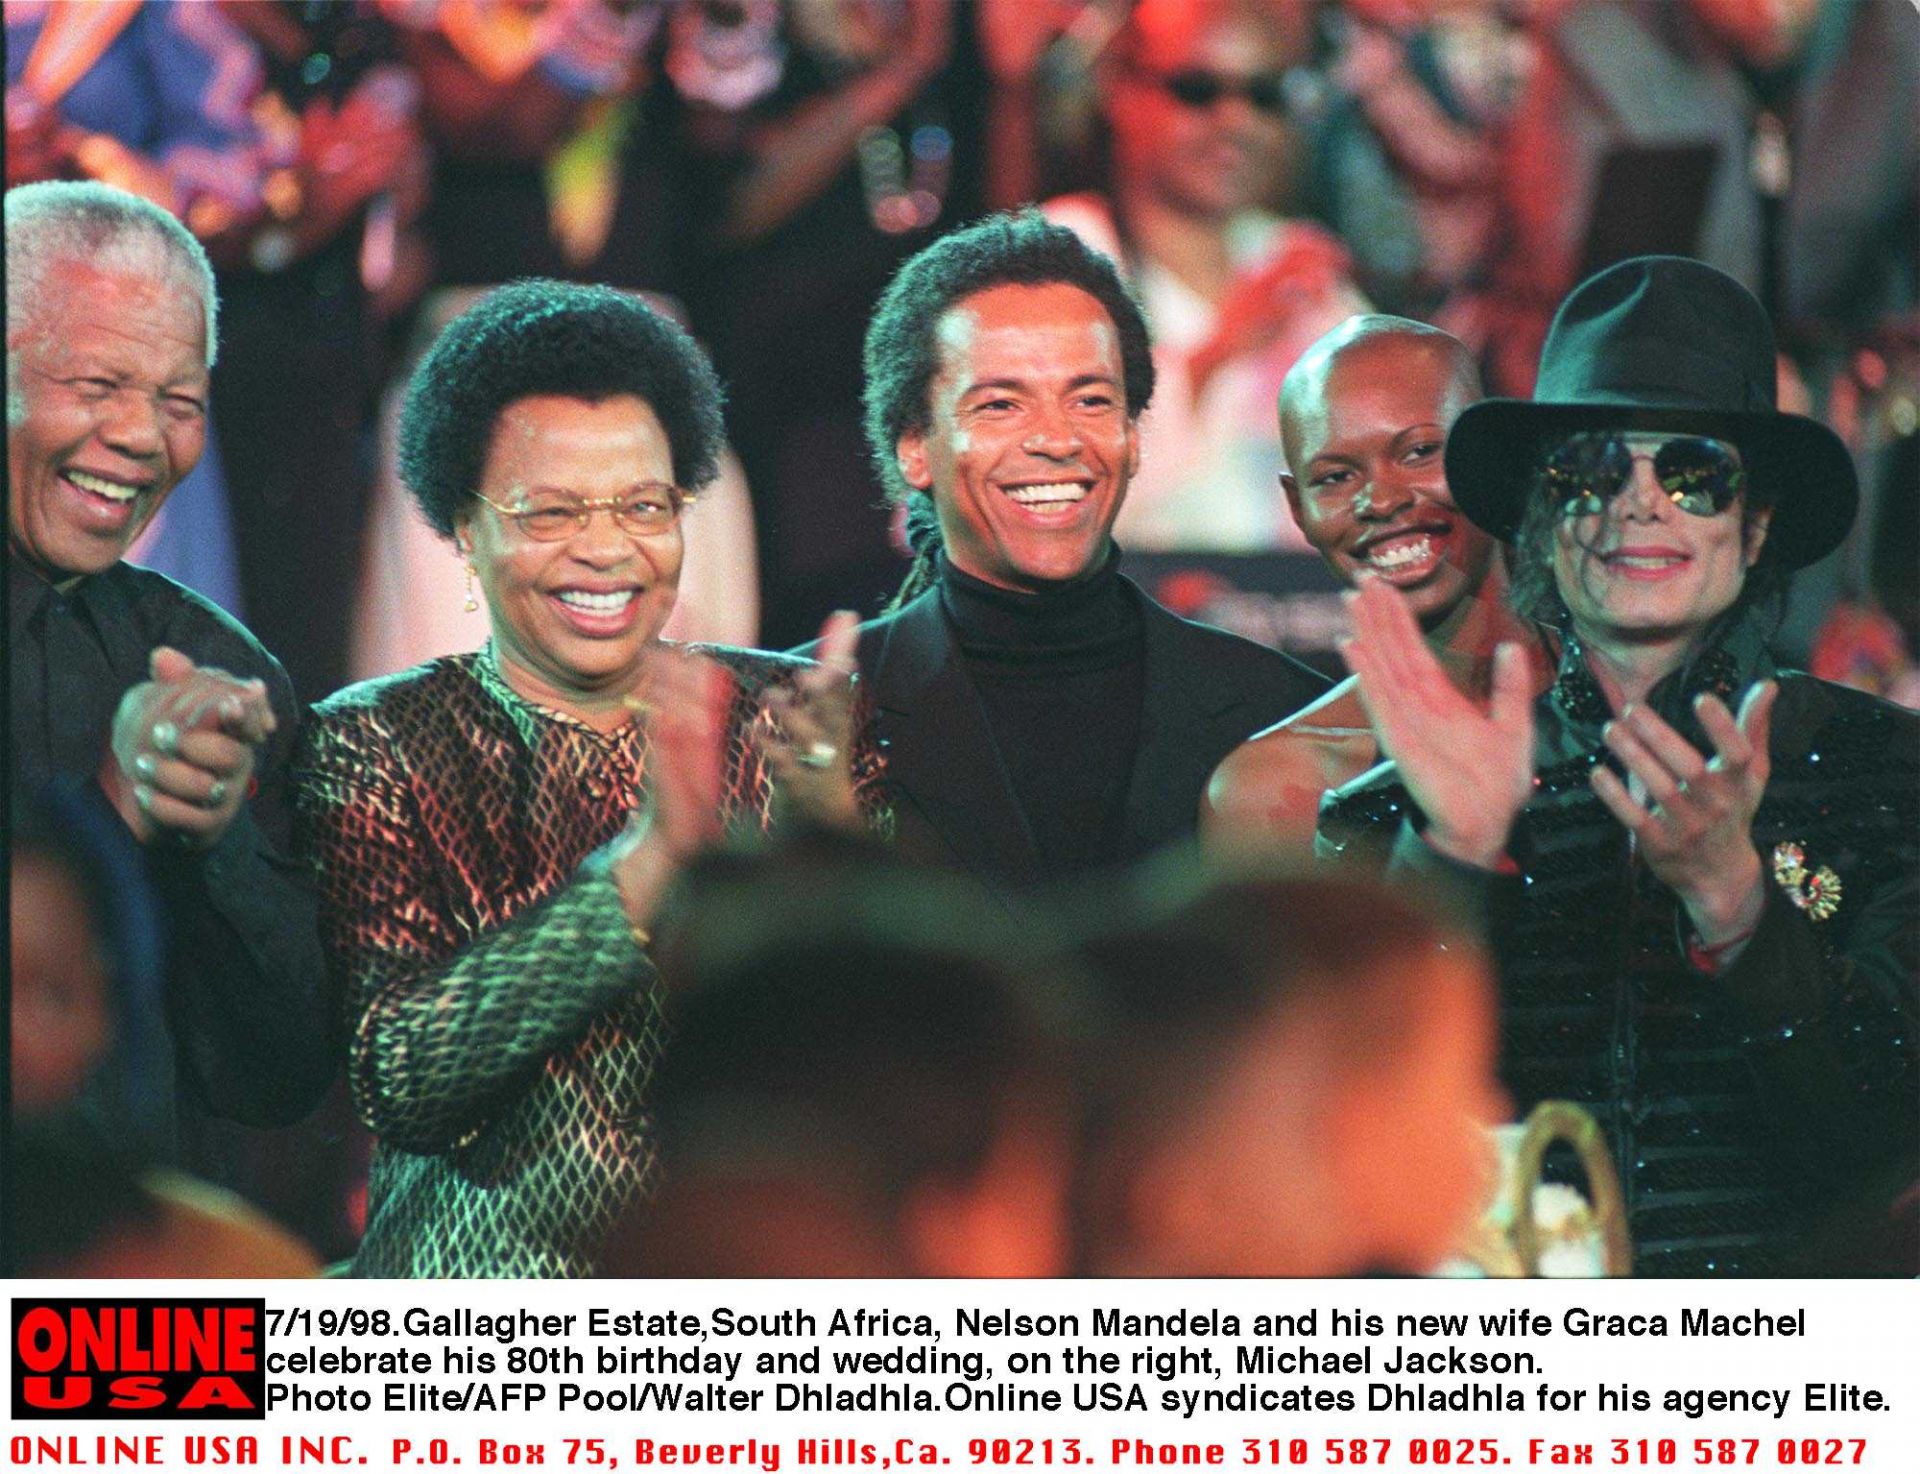 Нелсън Мандела празнува 80-годишния си рождения ден, на който присъства и поп звездата Майкъл Джексън